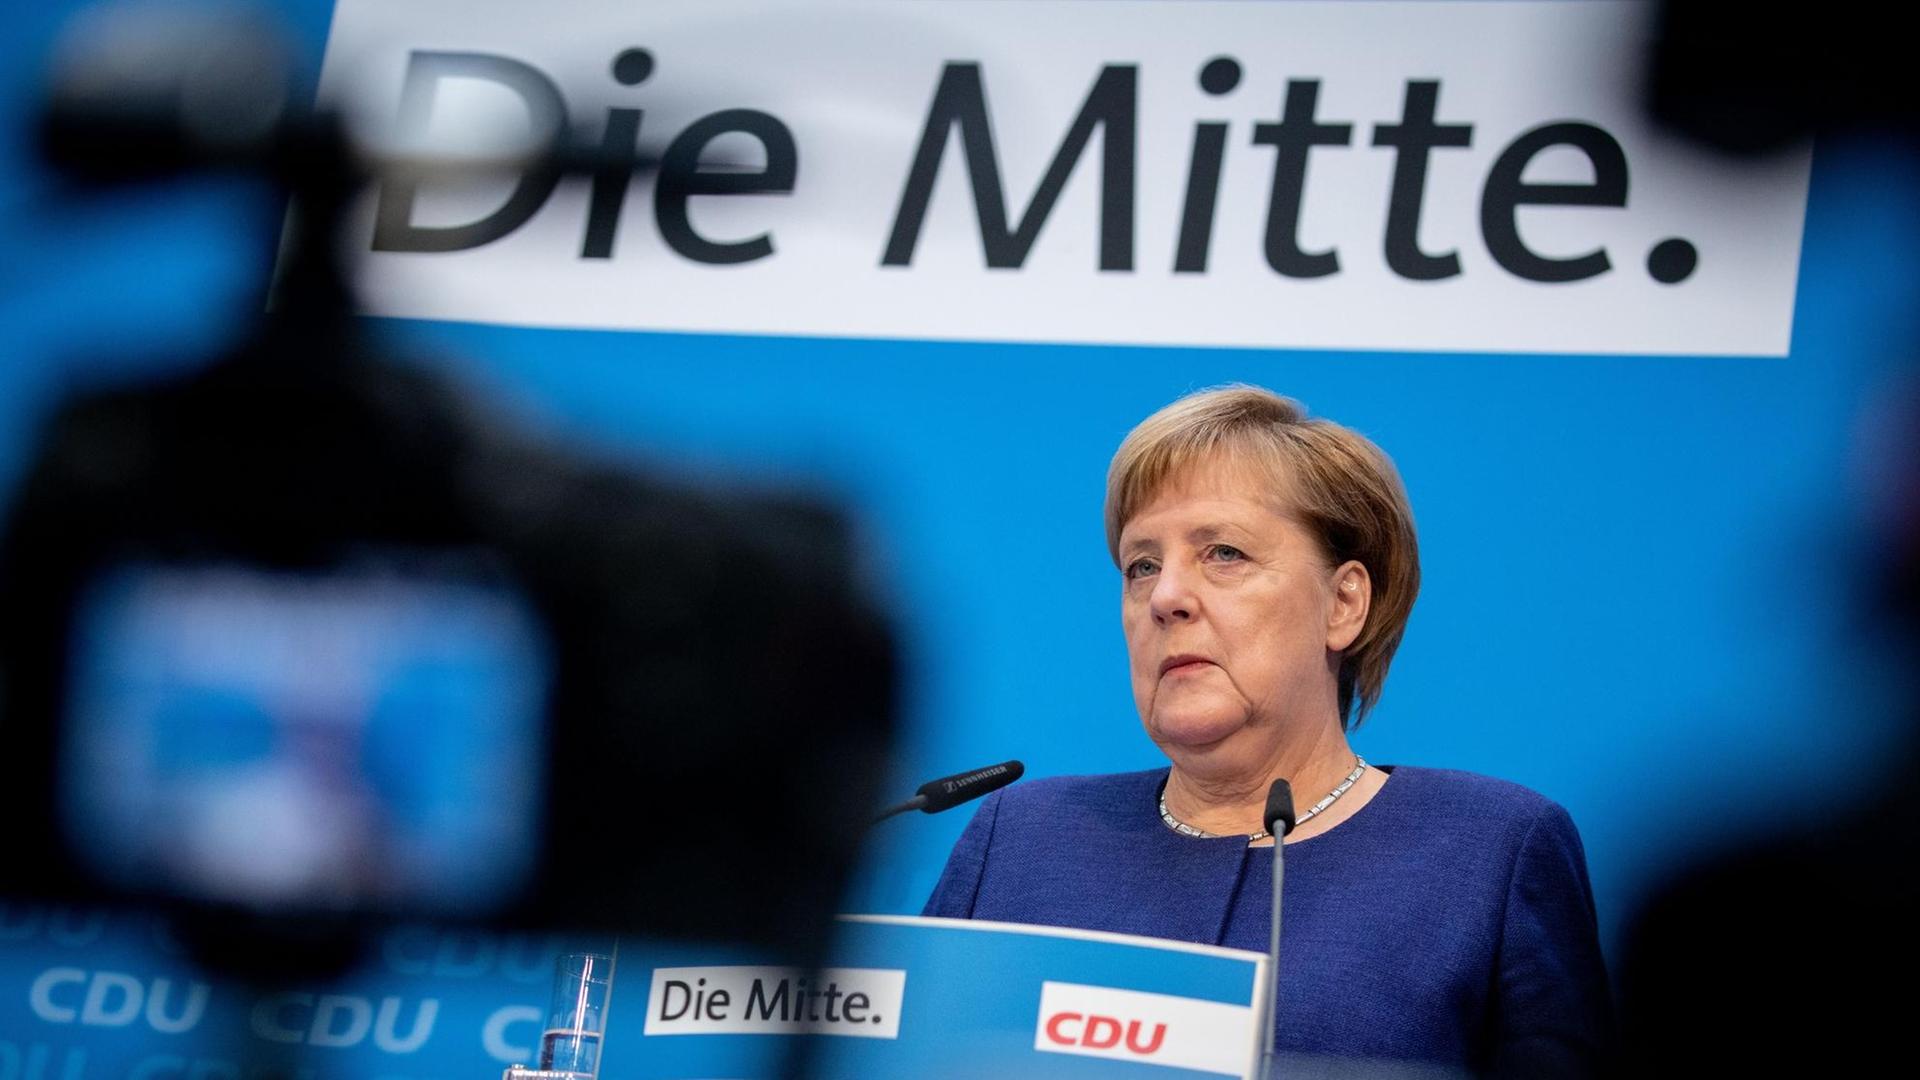 Bundeskanzlerin Angela Merkel spricht auf einer Pressekonferenz nach der Klausurtagung der CDU am 05.11.2018 im Konrad-Adenauer-Haus